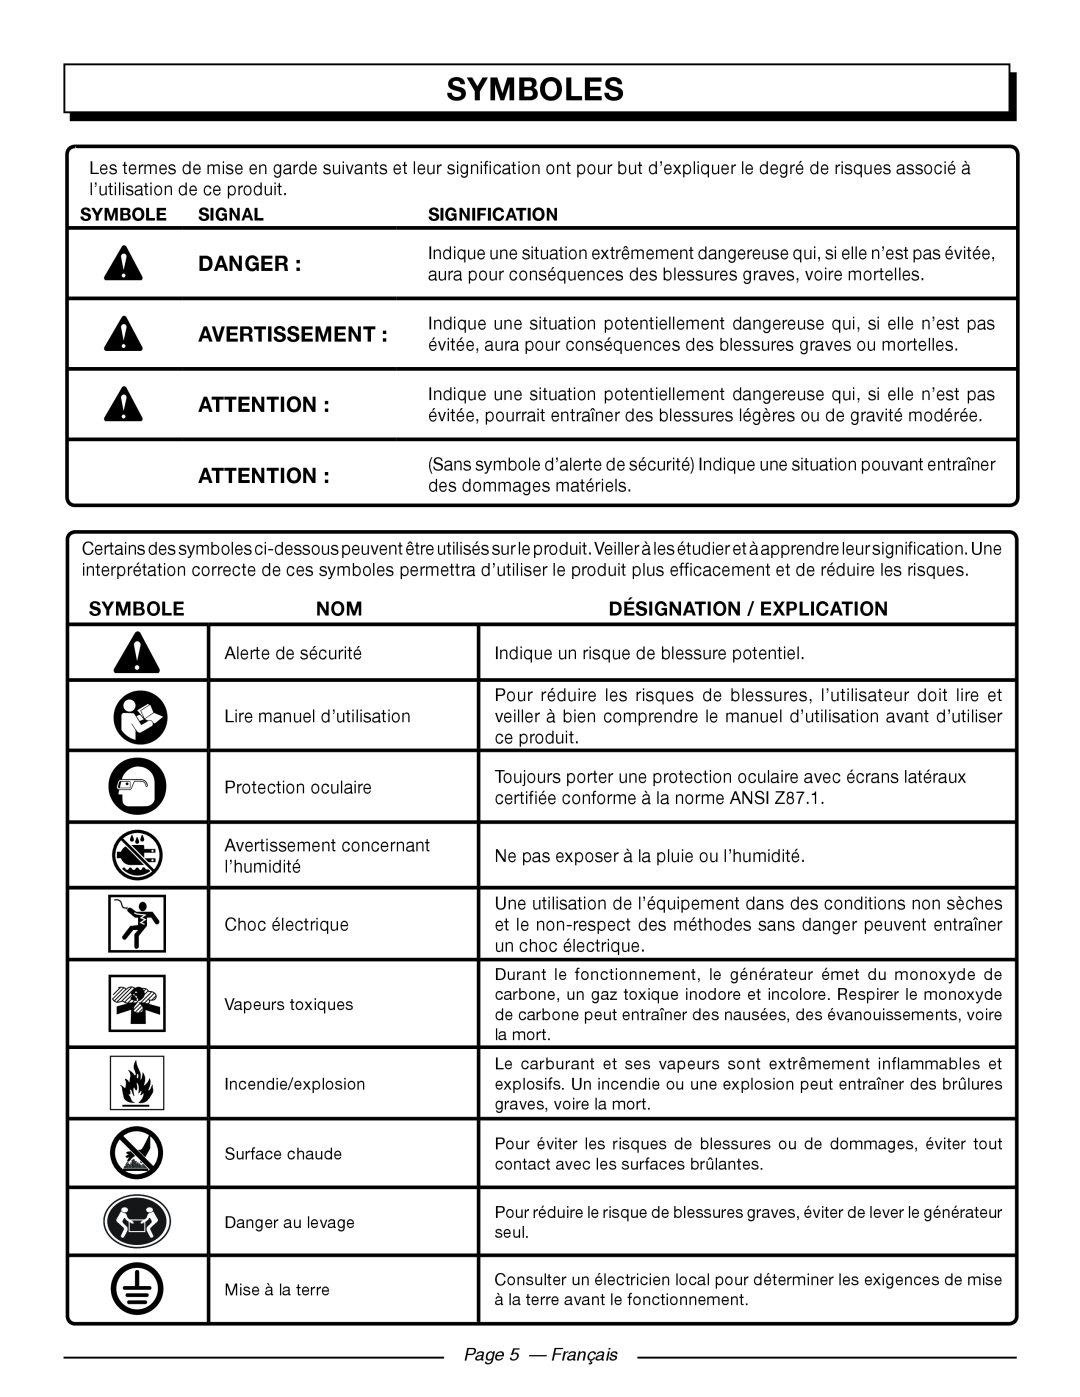 Homelite HGCA5700 manuel dutilisation Symboles, Désignation / Explication, Page 5 — Français, Danger, Avertissement 